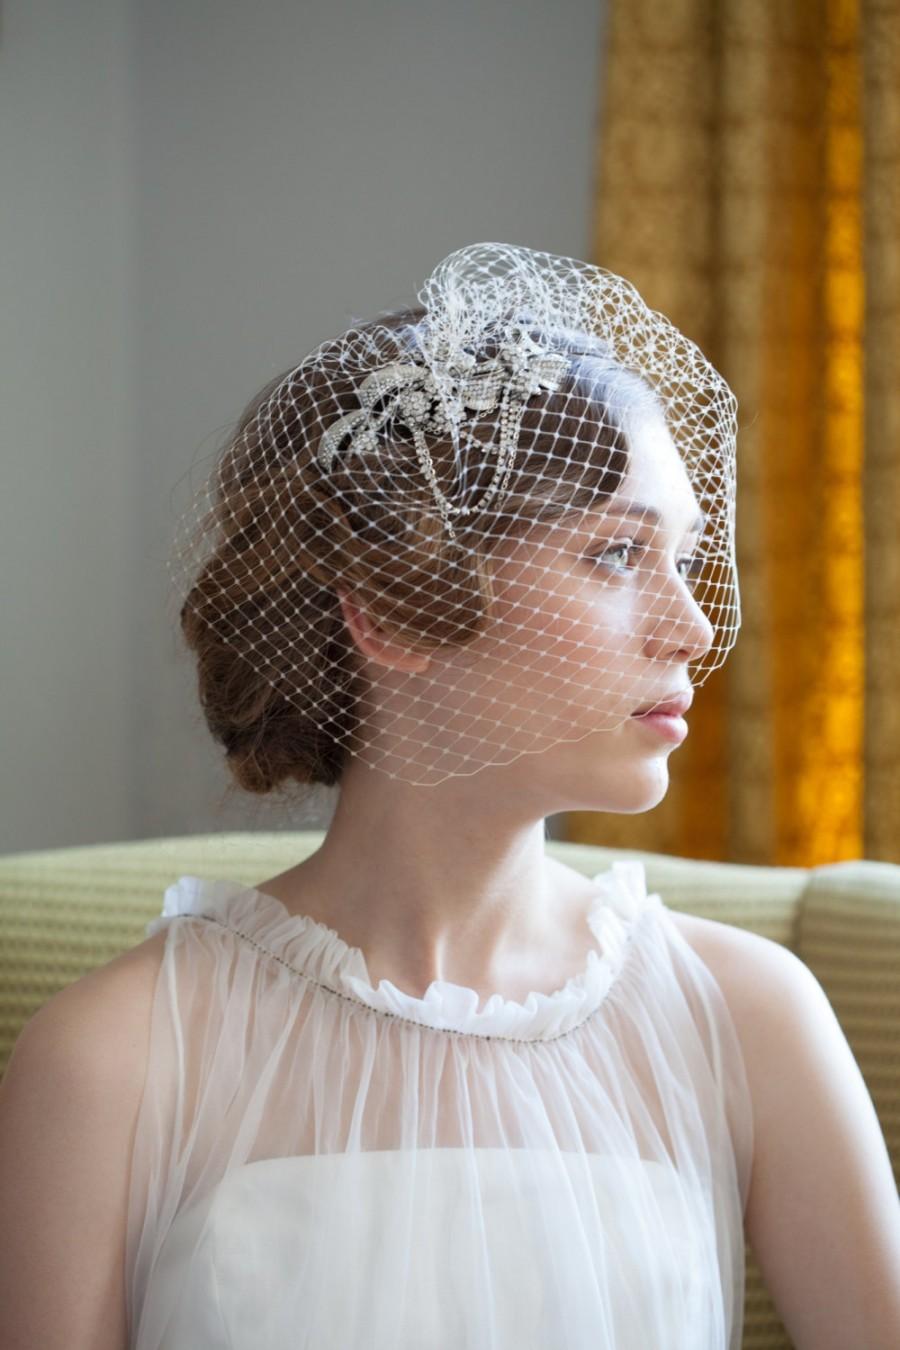 زفاف - Wedding Birdcage veil and side headpiece set - crystal hair accessory - Bridal Veil in ivory, white, or black veil - 1940s, 1950s style veil